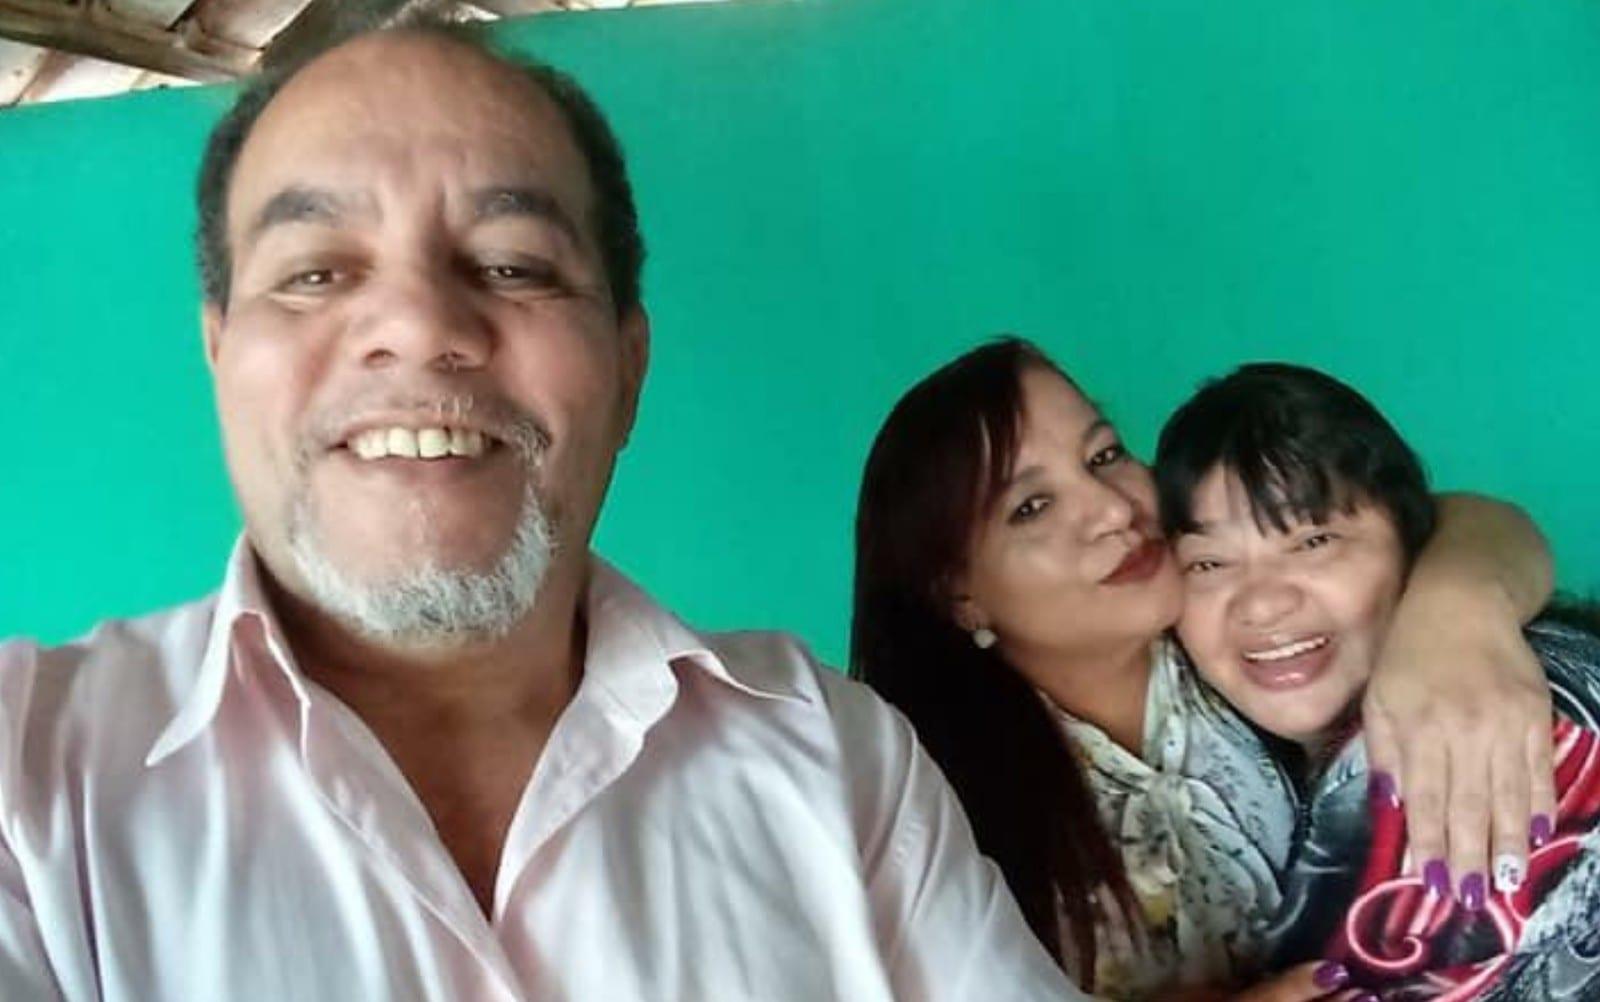 Pastor, mulher e sobrinha morrem em Anápolis após enterro da irmã dele